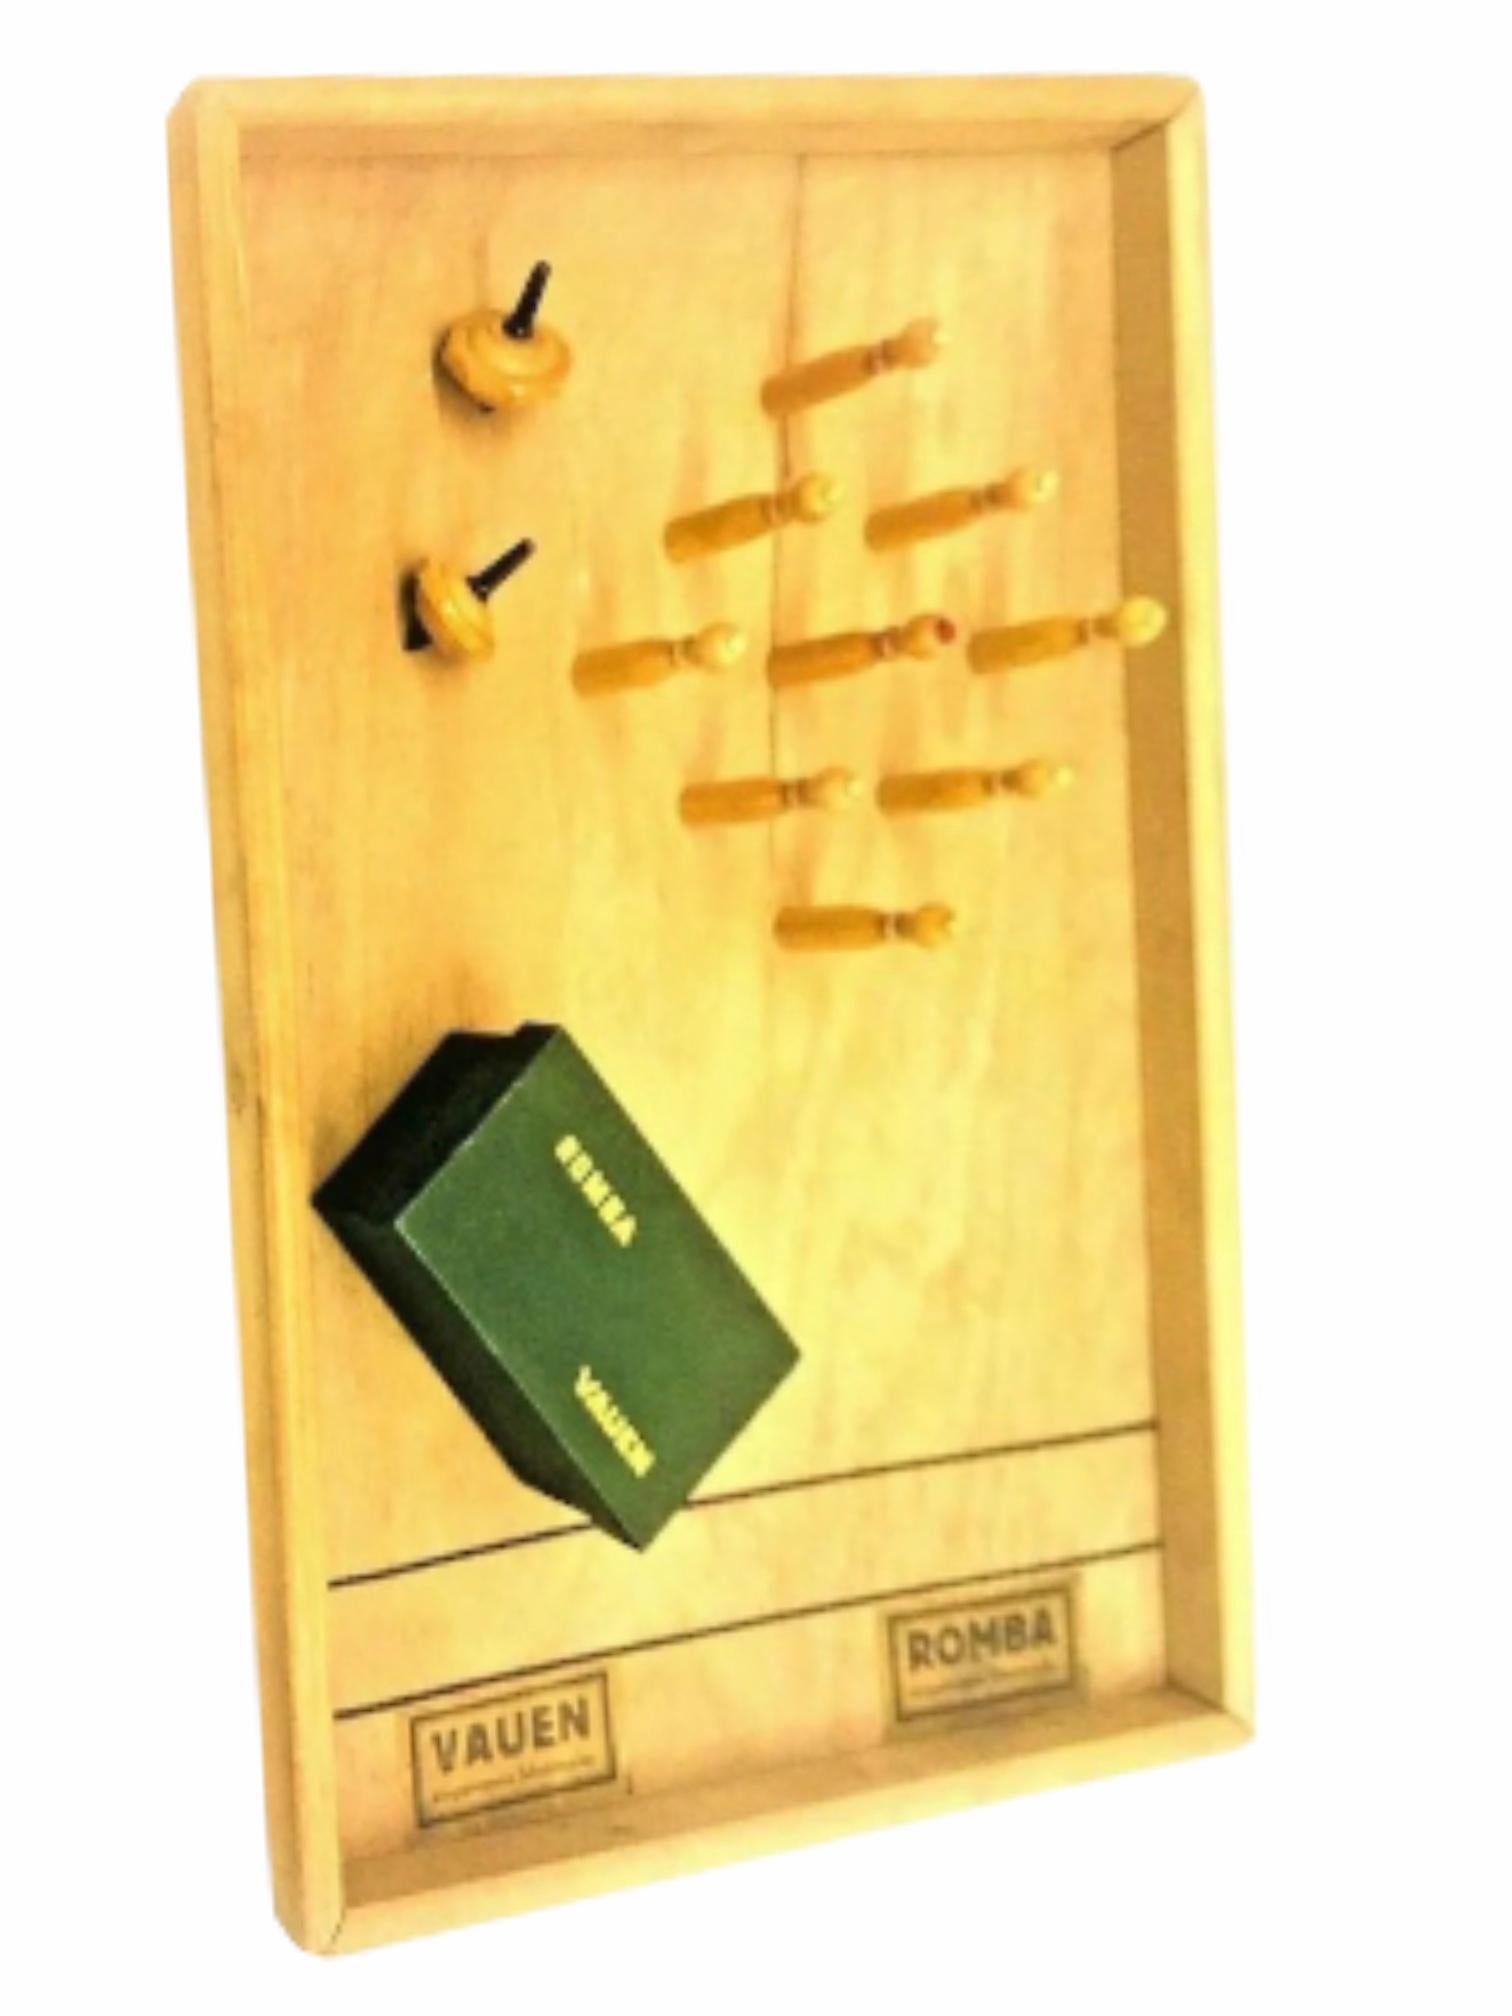 Un beau plateau de jeu de table, fabriqué en bois par Vauen, Allemagne. Tout état d'origine. Prêt à l'emploi et amusant à jouer. En bois, quilles dans leur boîte en carton d'origine. La boîte mesure environ 1 5/8